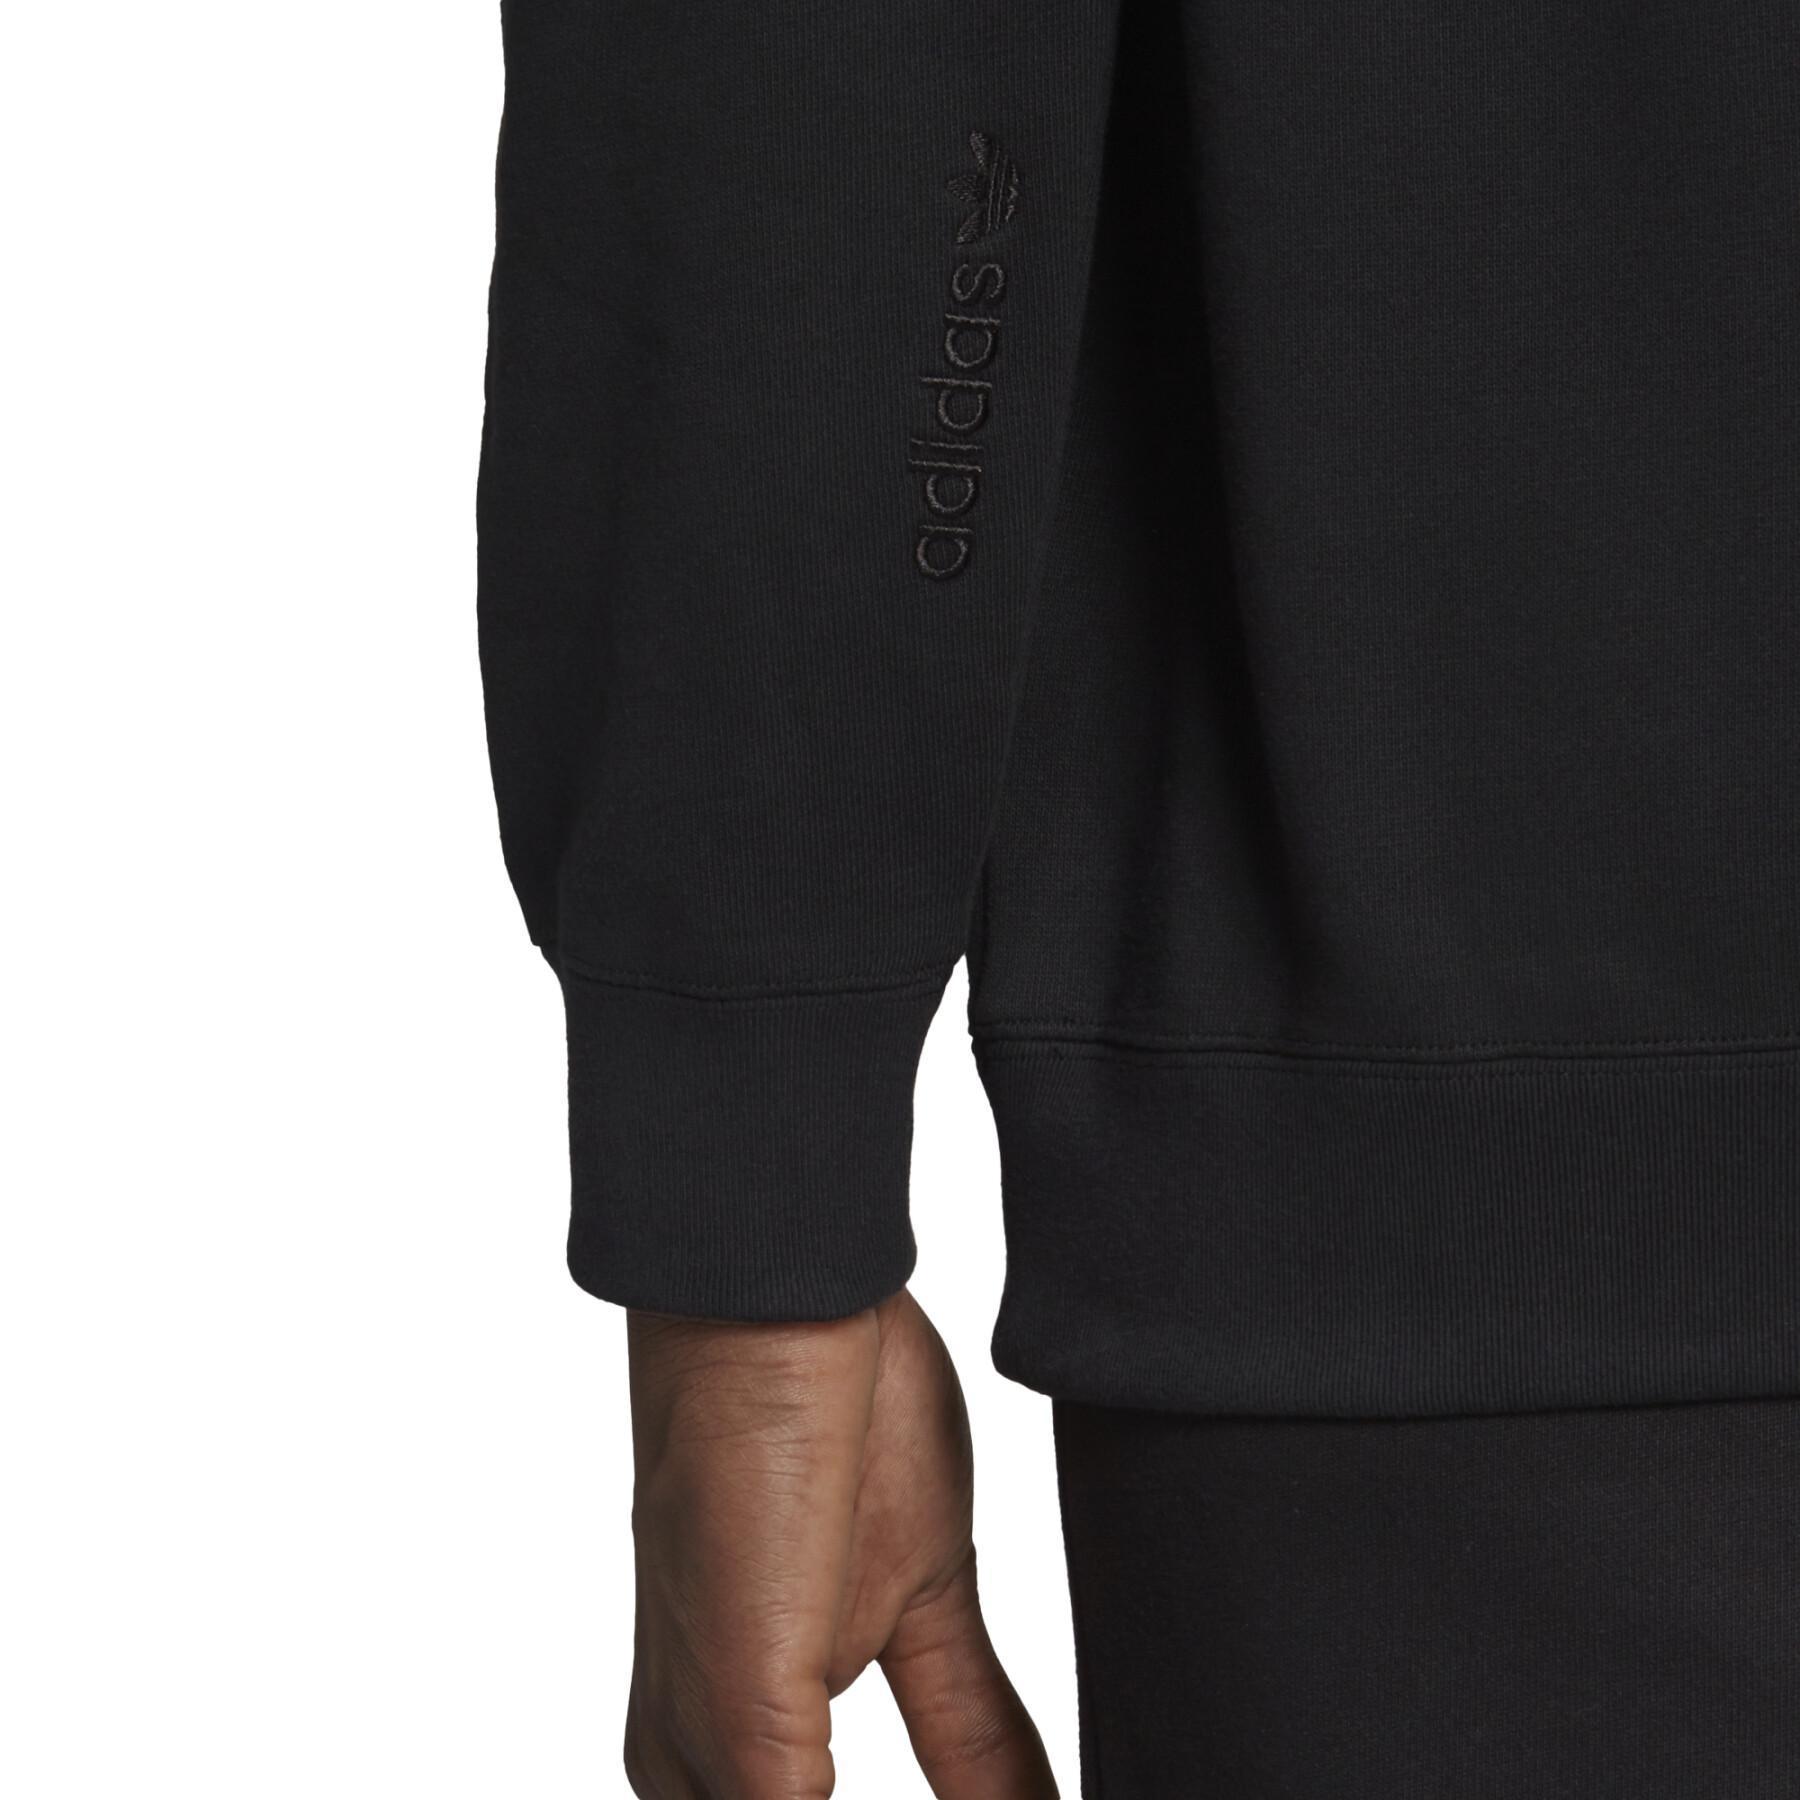 Sweatshirt à capuche adidas Originals Trefoil A33